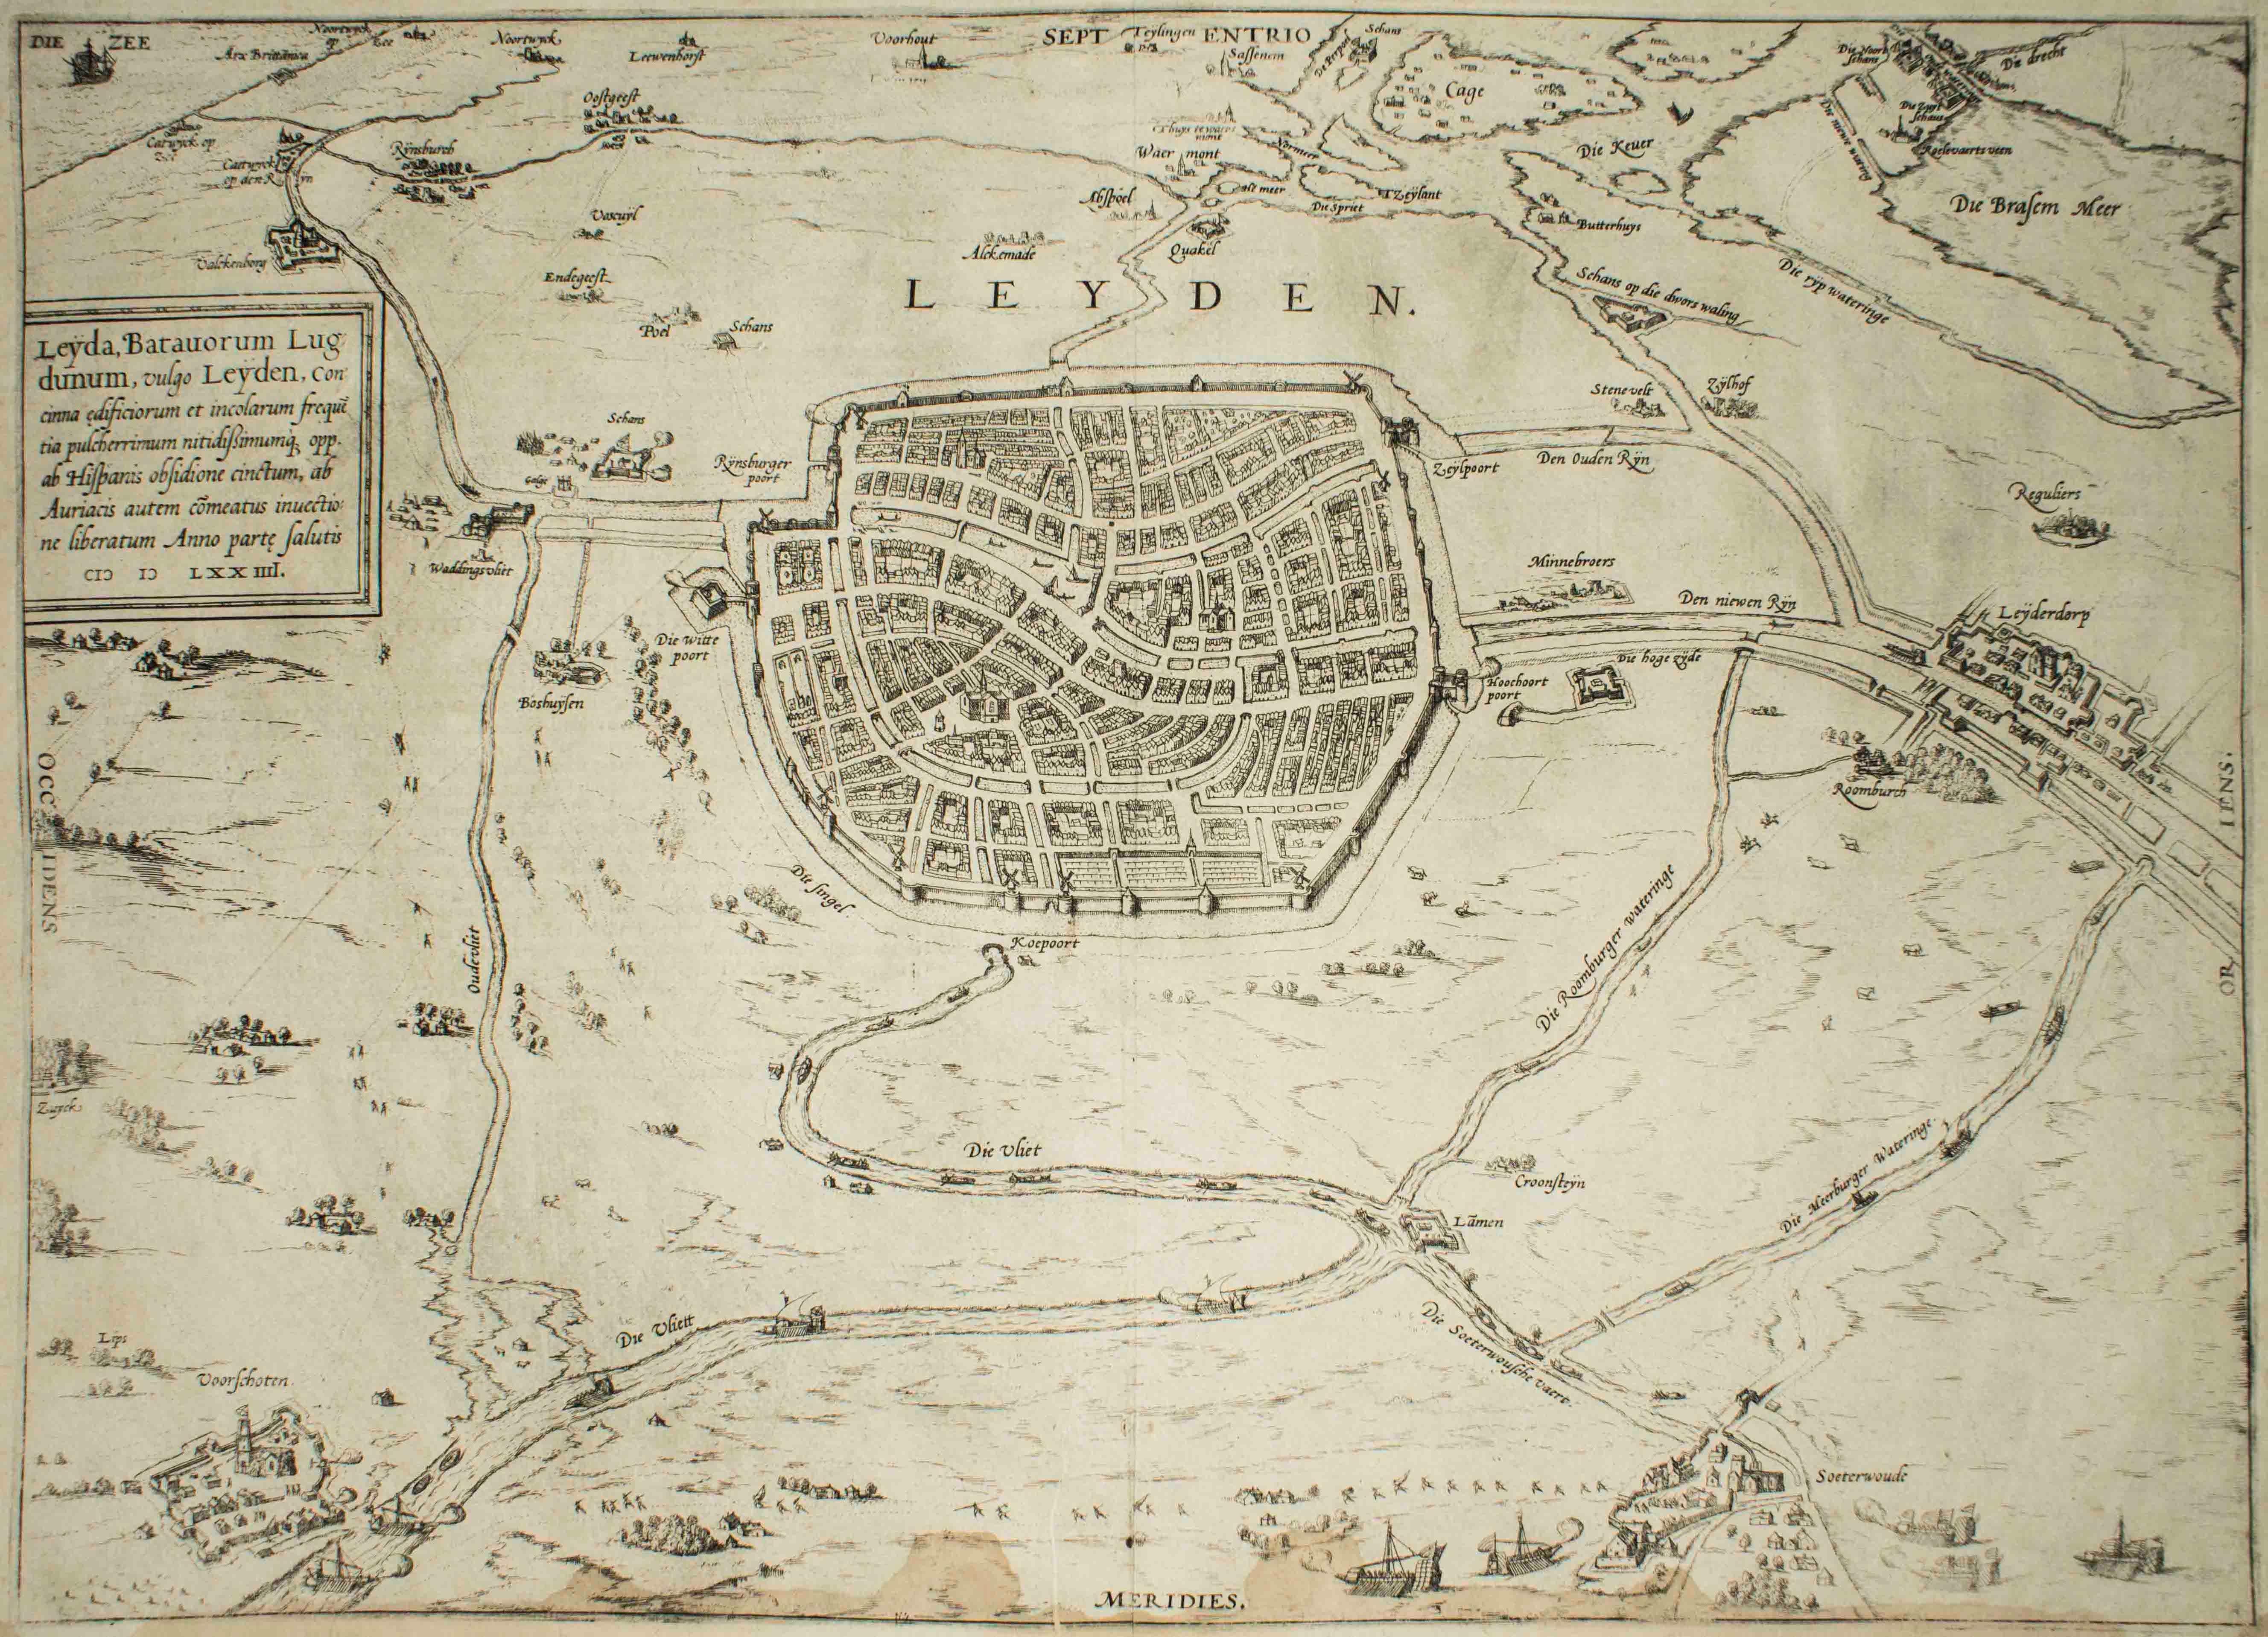 Leyden, Map from "Civitates Orbis Terrarum" - by F. Hogenberg - 1575